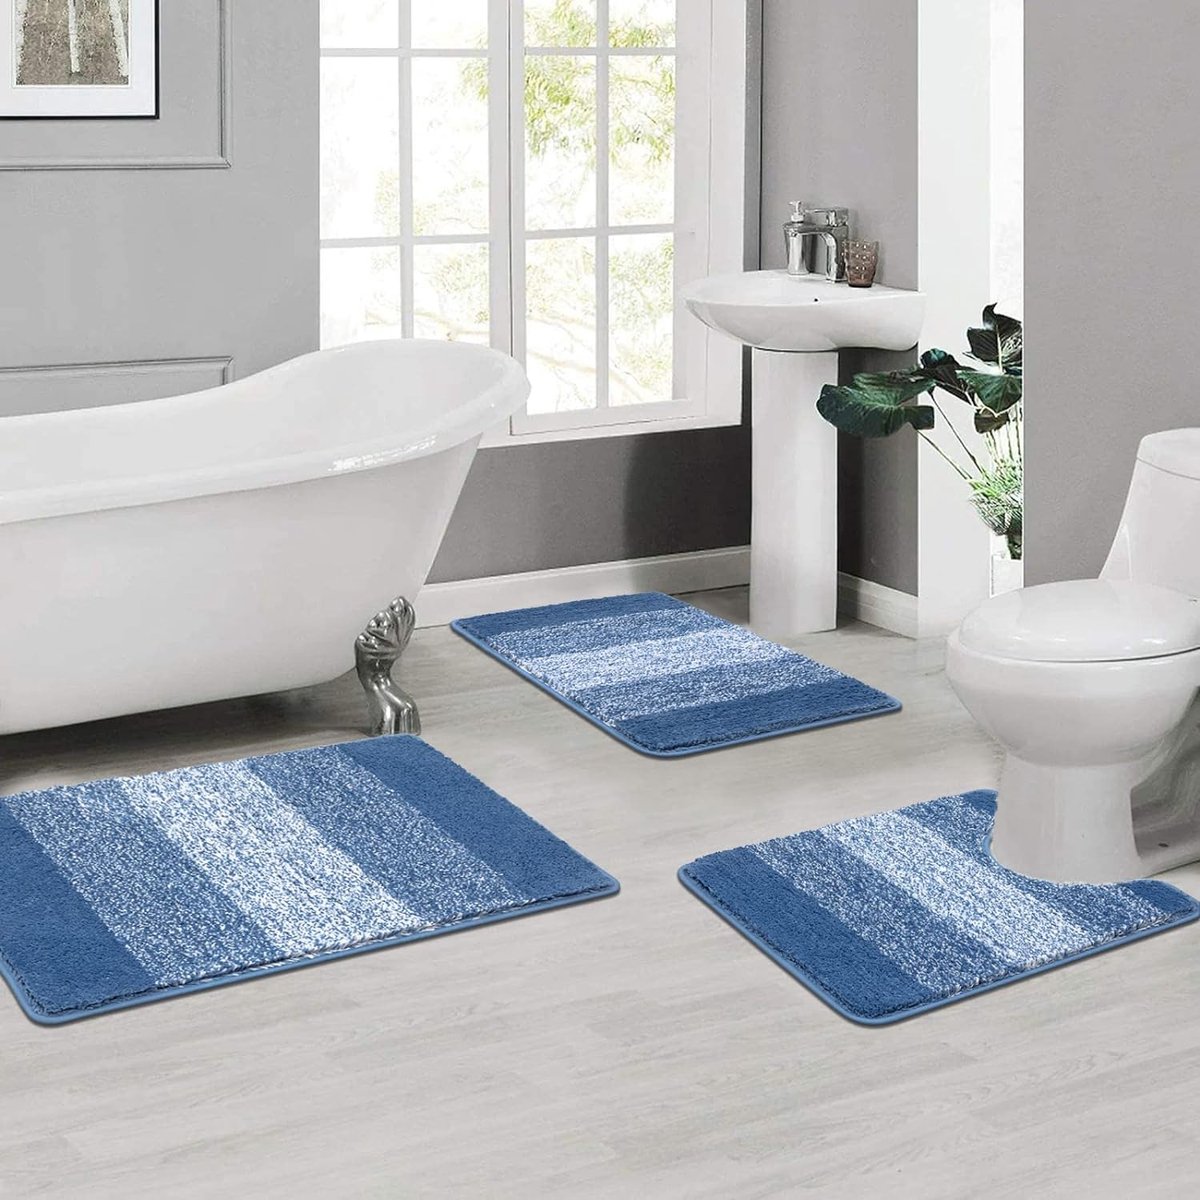 Microfiber 3-delige badmat sets antislip badtapijten en voetstuk matten voor badkamer wasbaar absorberend badkamer vloer tapijt toilettapijt, blauw